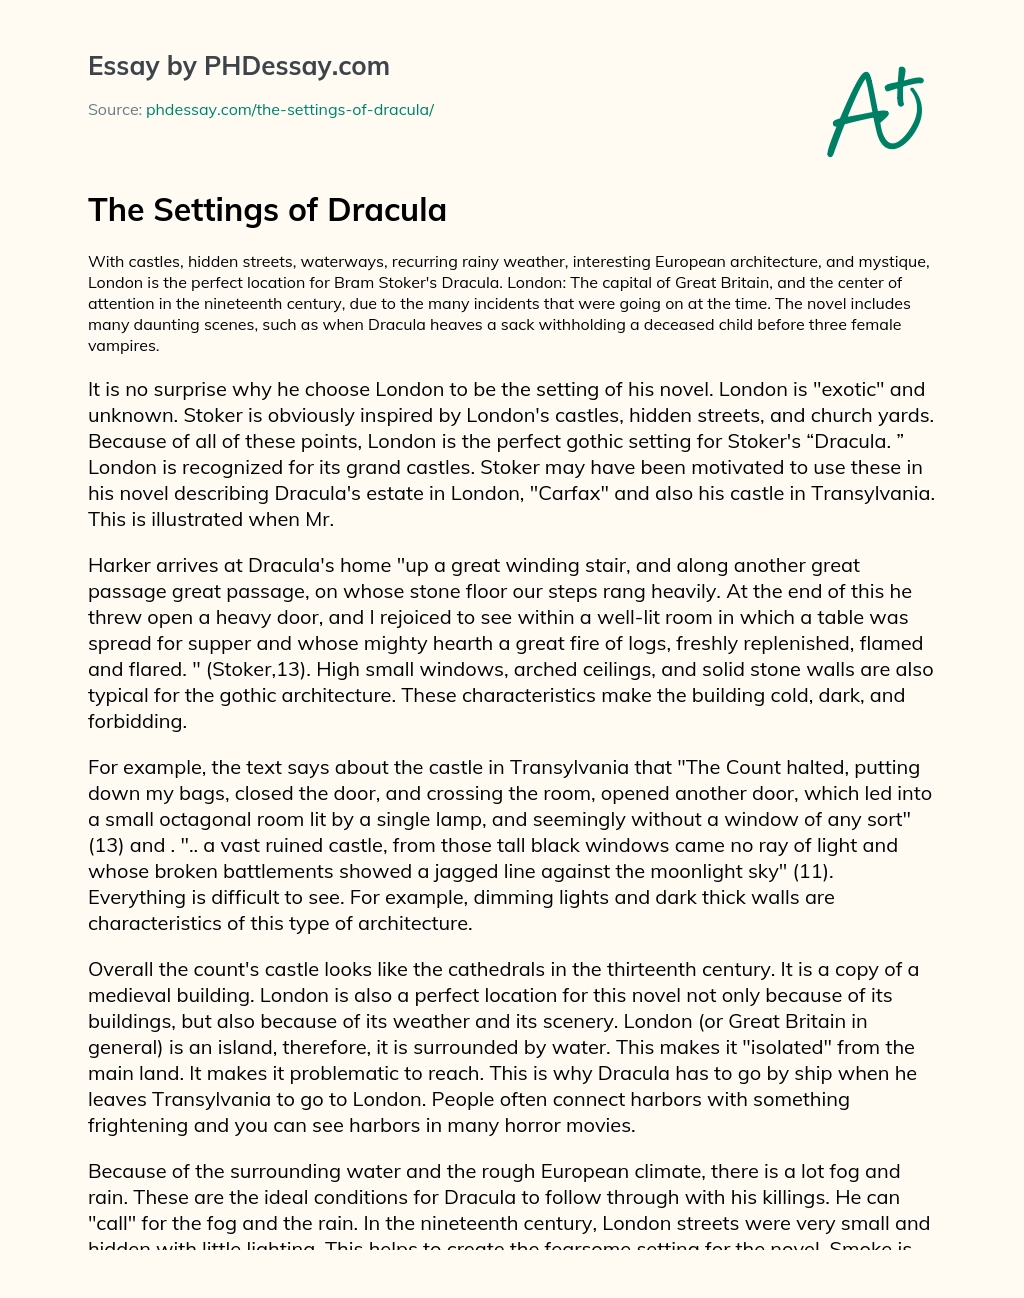 The Settings of Dracula essay